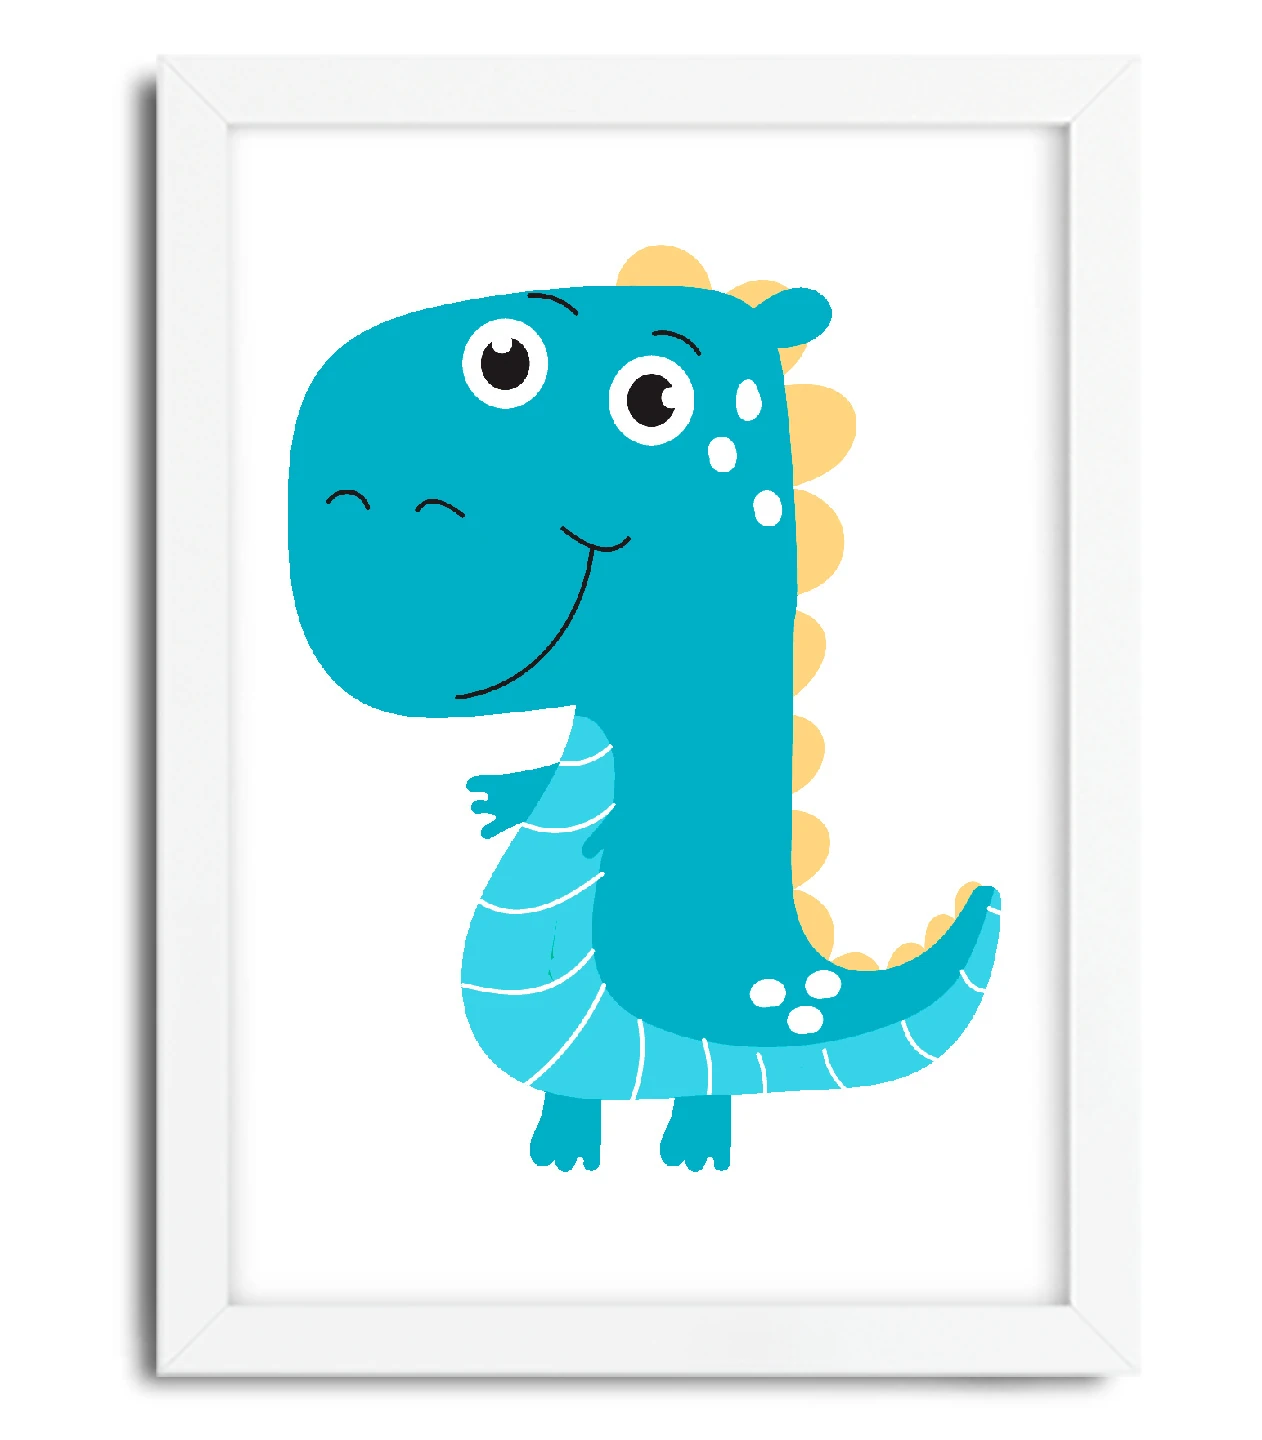 Quadro Decorativo Infantil Dinossauro Azul SKU: 4093g2 – Loja da Arte  Quadros Decorativos